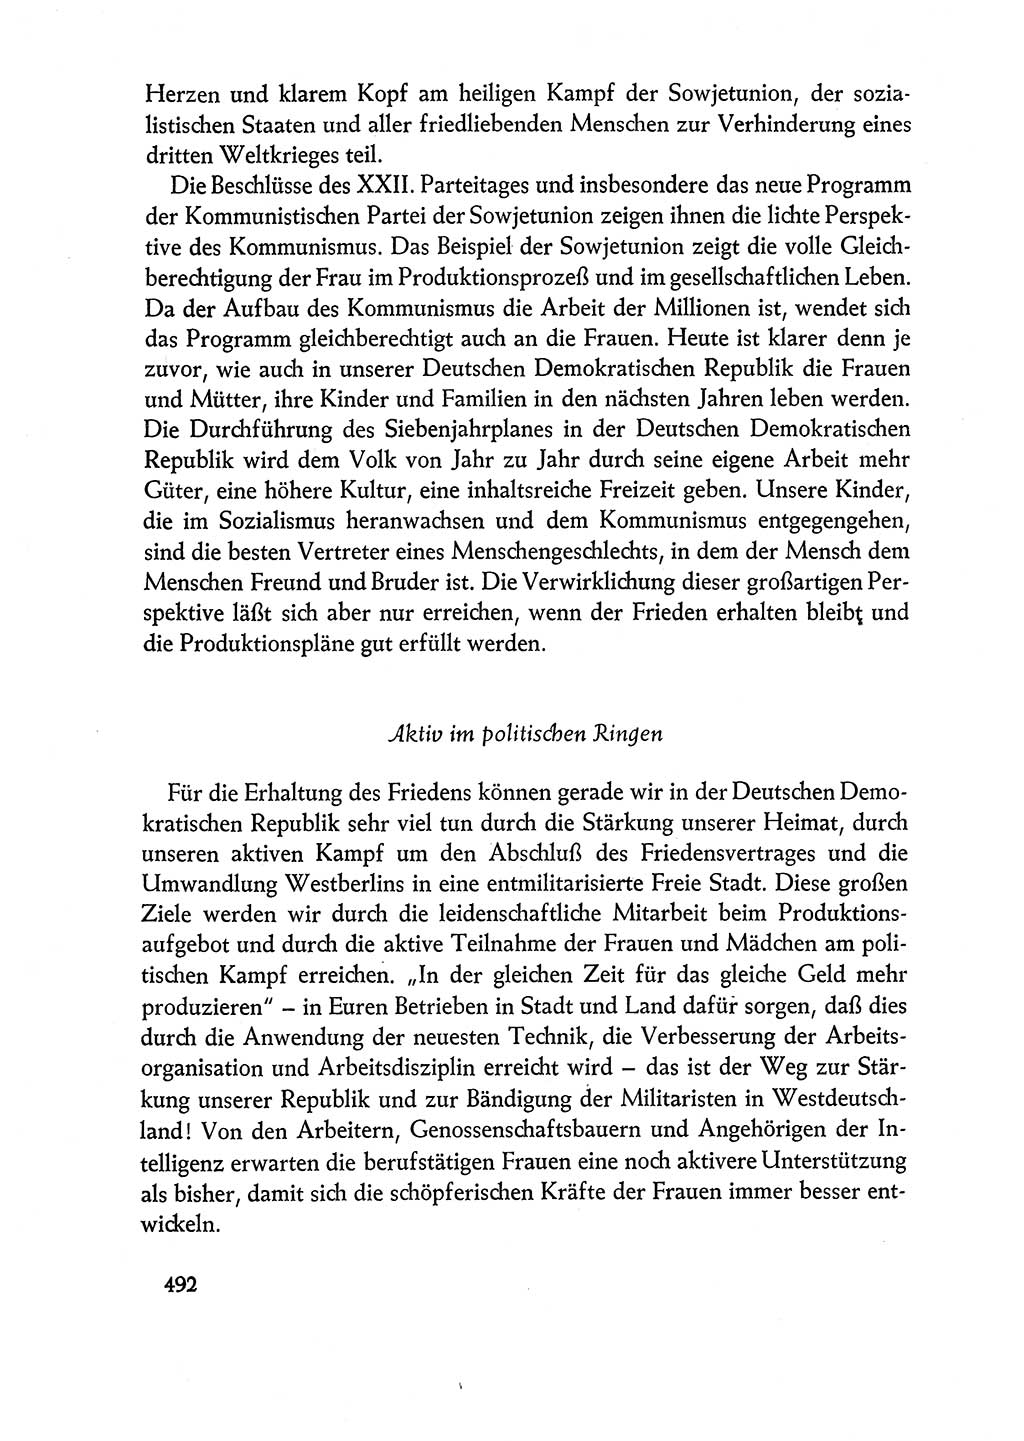 Dokumente der Sozialistischen Einheitspartei Deutschlands (SED) [Deutsche Demokratische Republik (DDR)] 1960-1961, Seite 492 (Dok. SED DDR 1960-1961, S. 492)